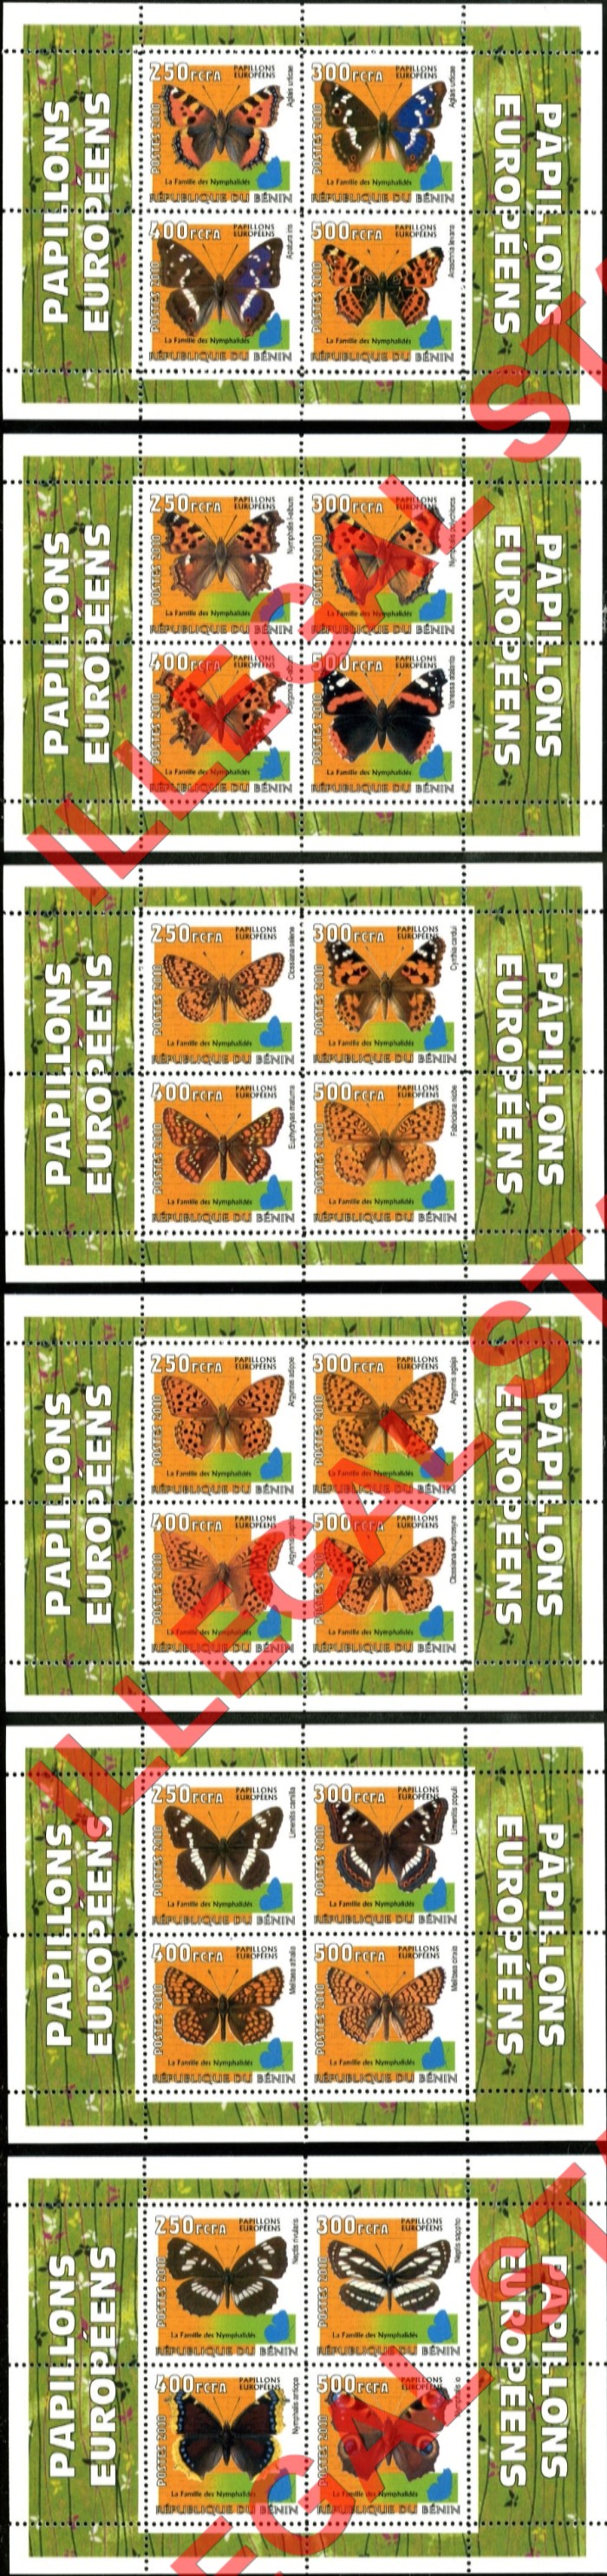 Benin 2010 Butterflies Illegal Stamp Souvenir Sheets of 4